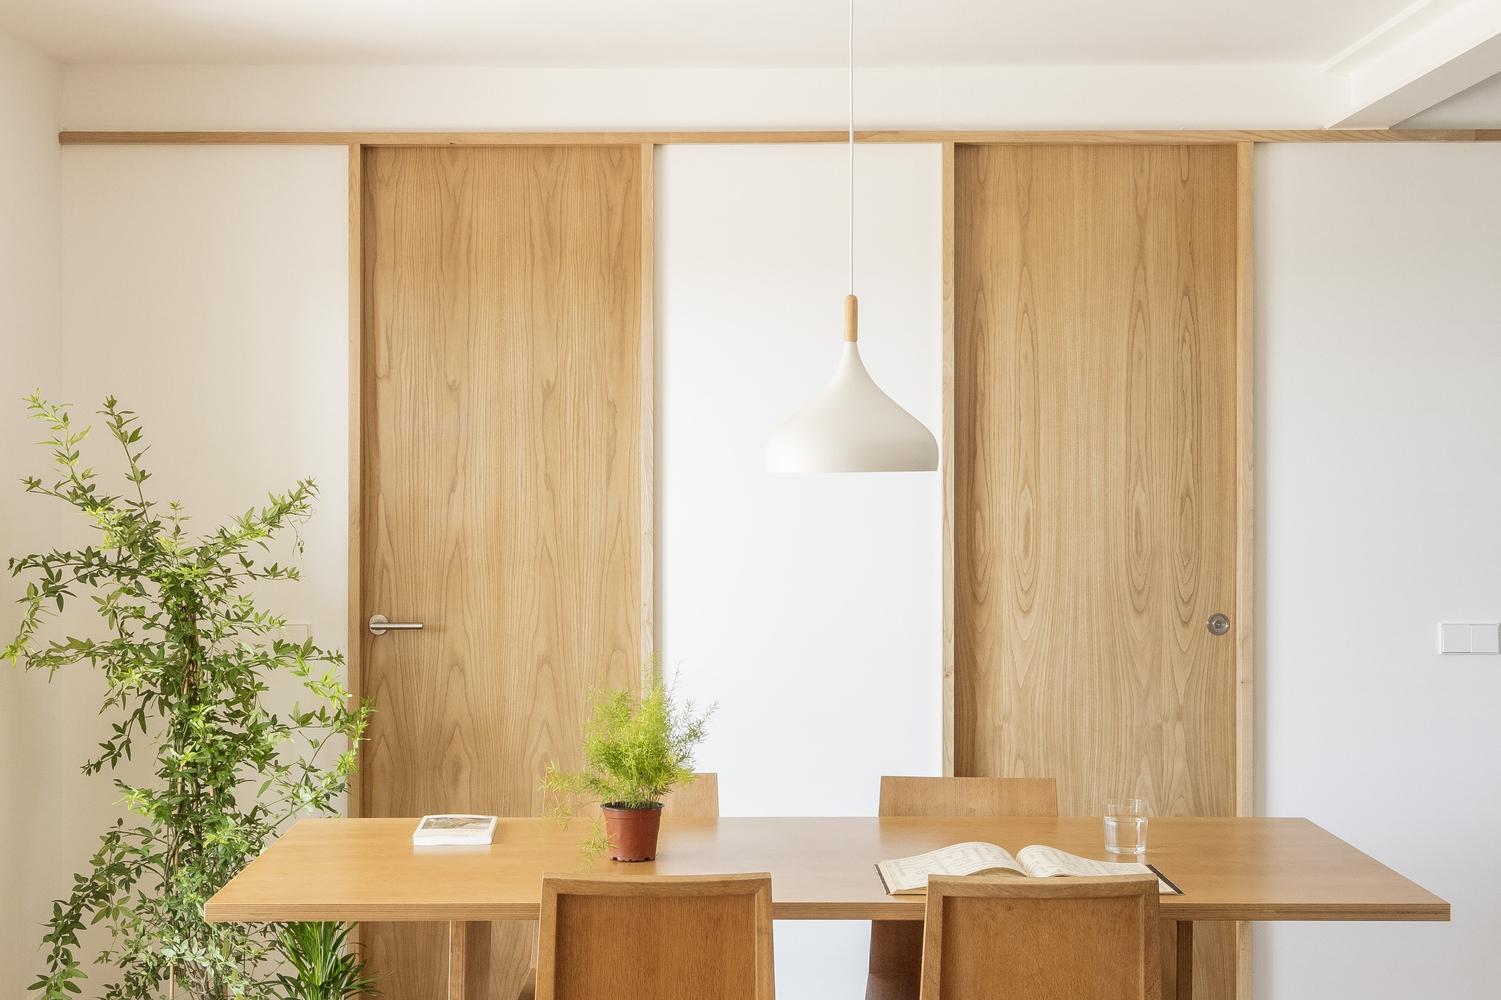 西班牙現代木系家居 富有通透明亮空間感的住宅